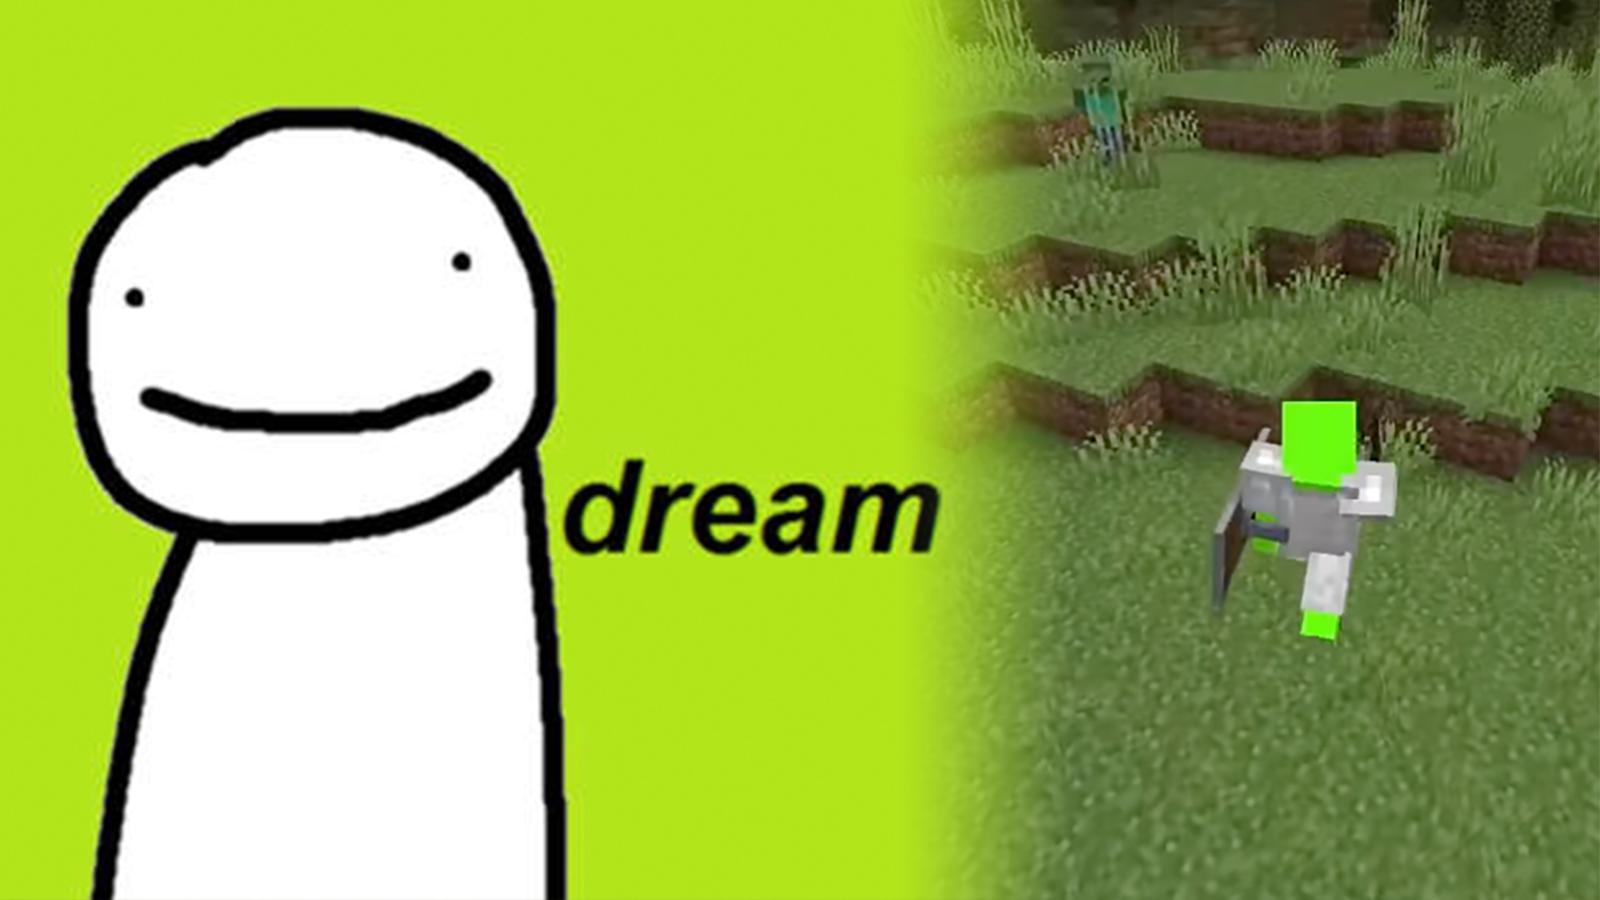 Dream's logo next to a Minecraft screencap